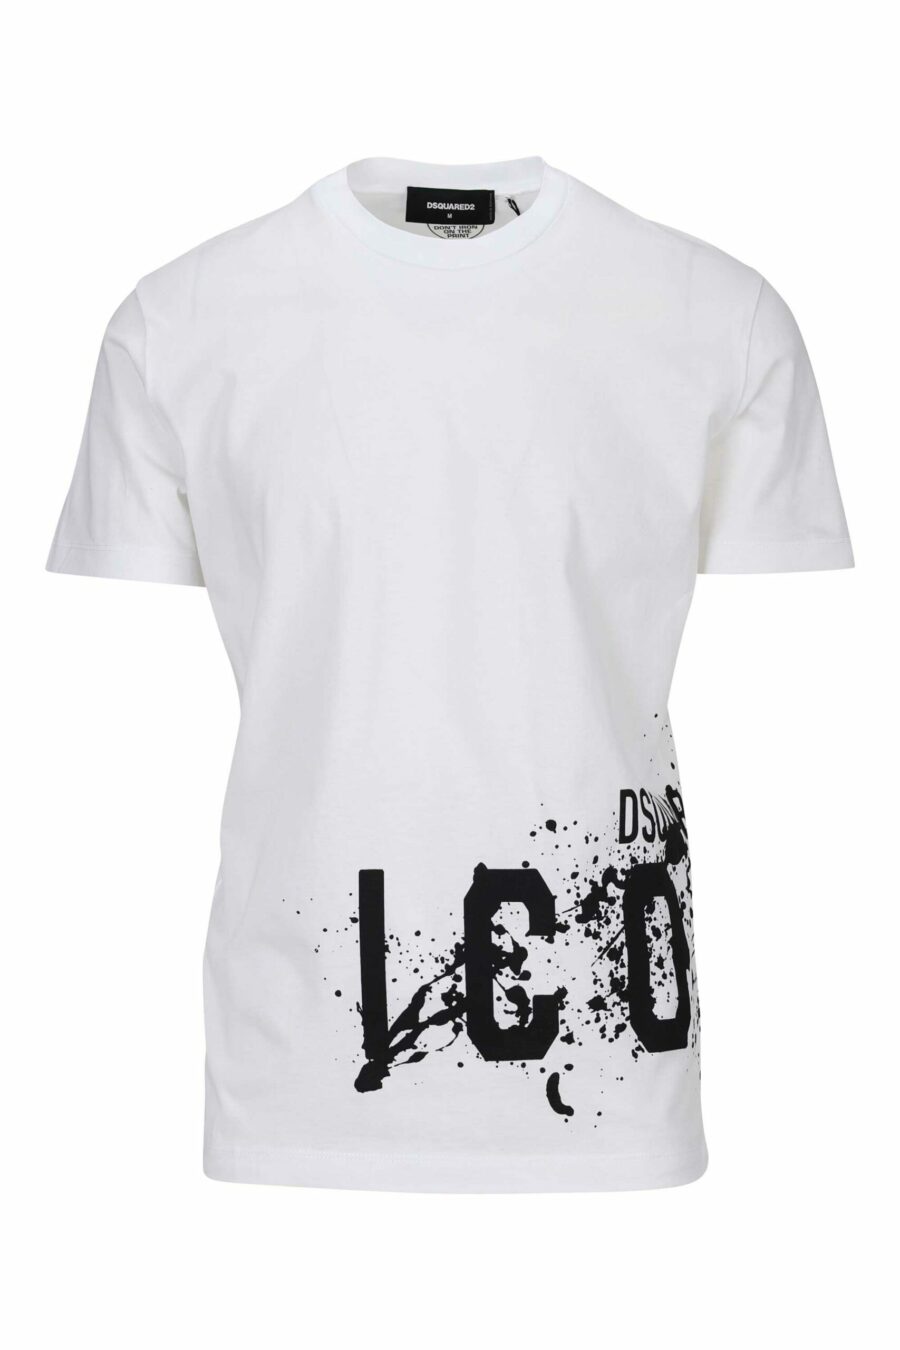 T-shirt branca com maxilogo "icon splash" por baixo - 8054148358549 à escala